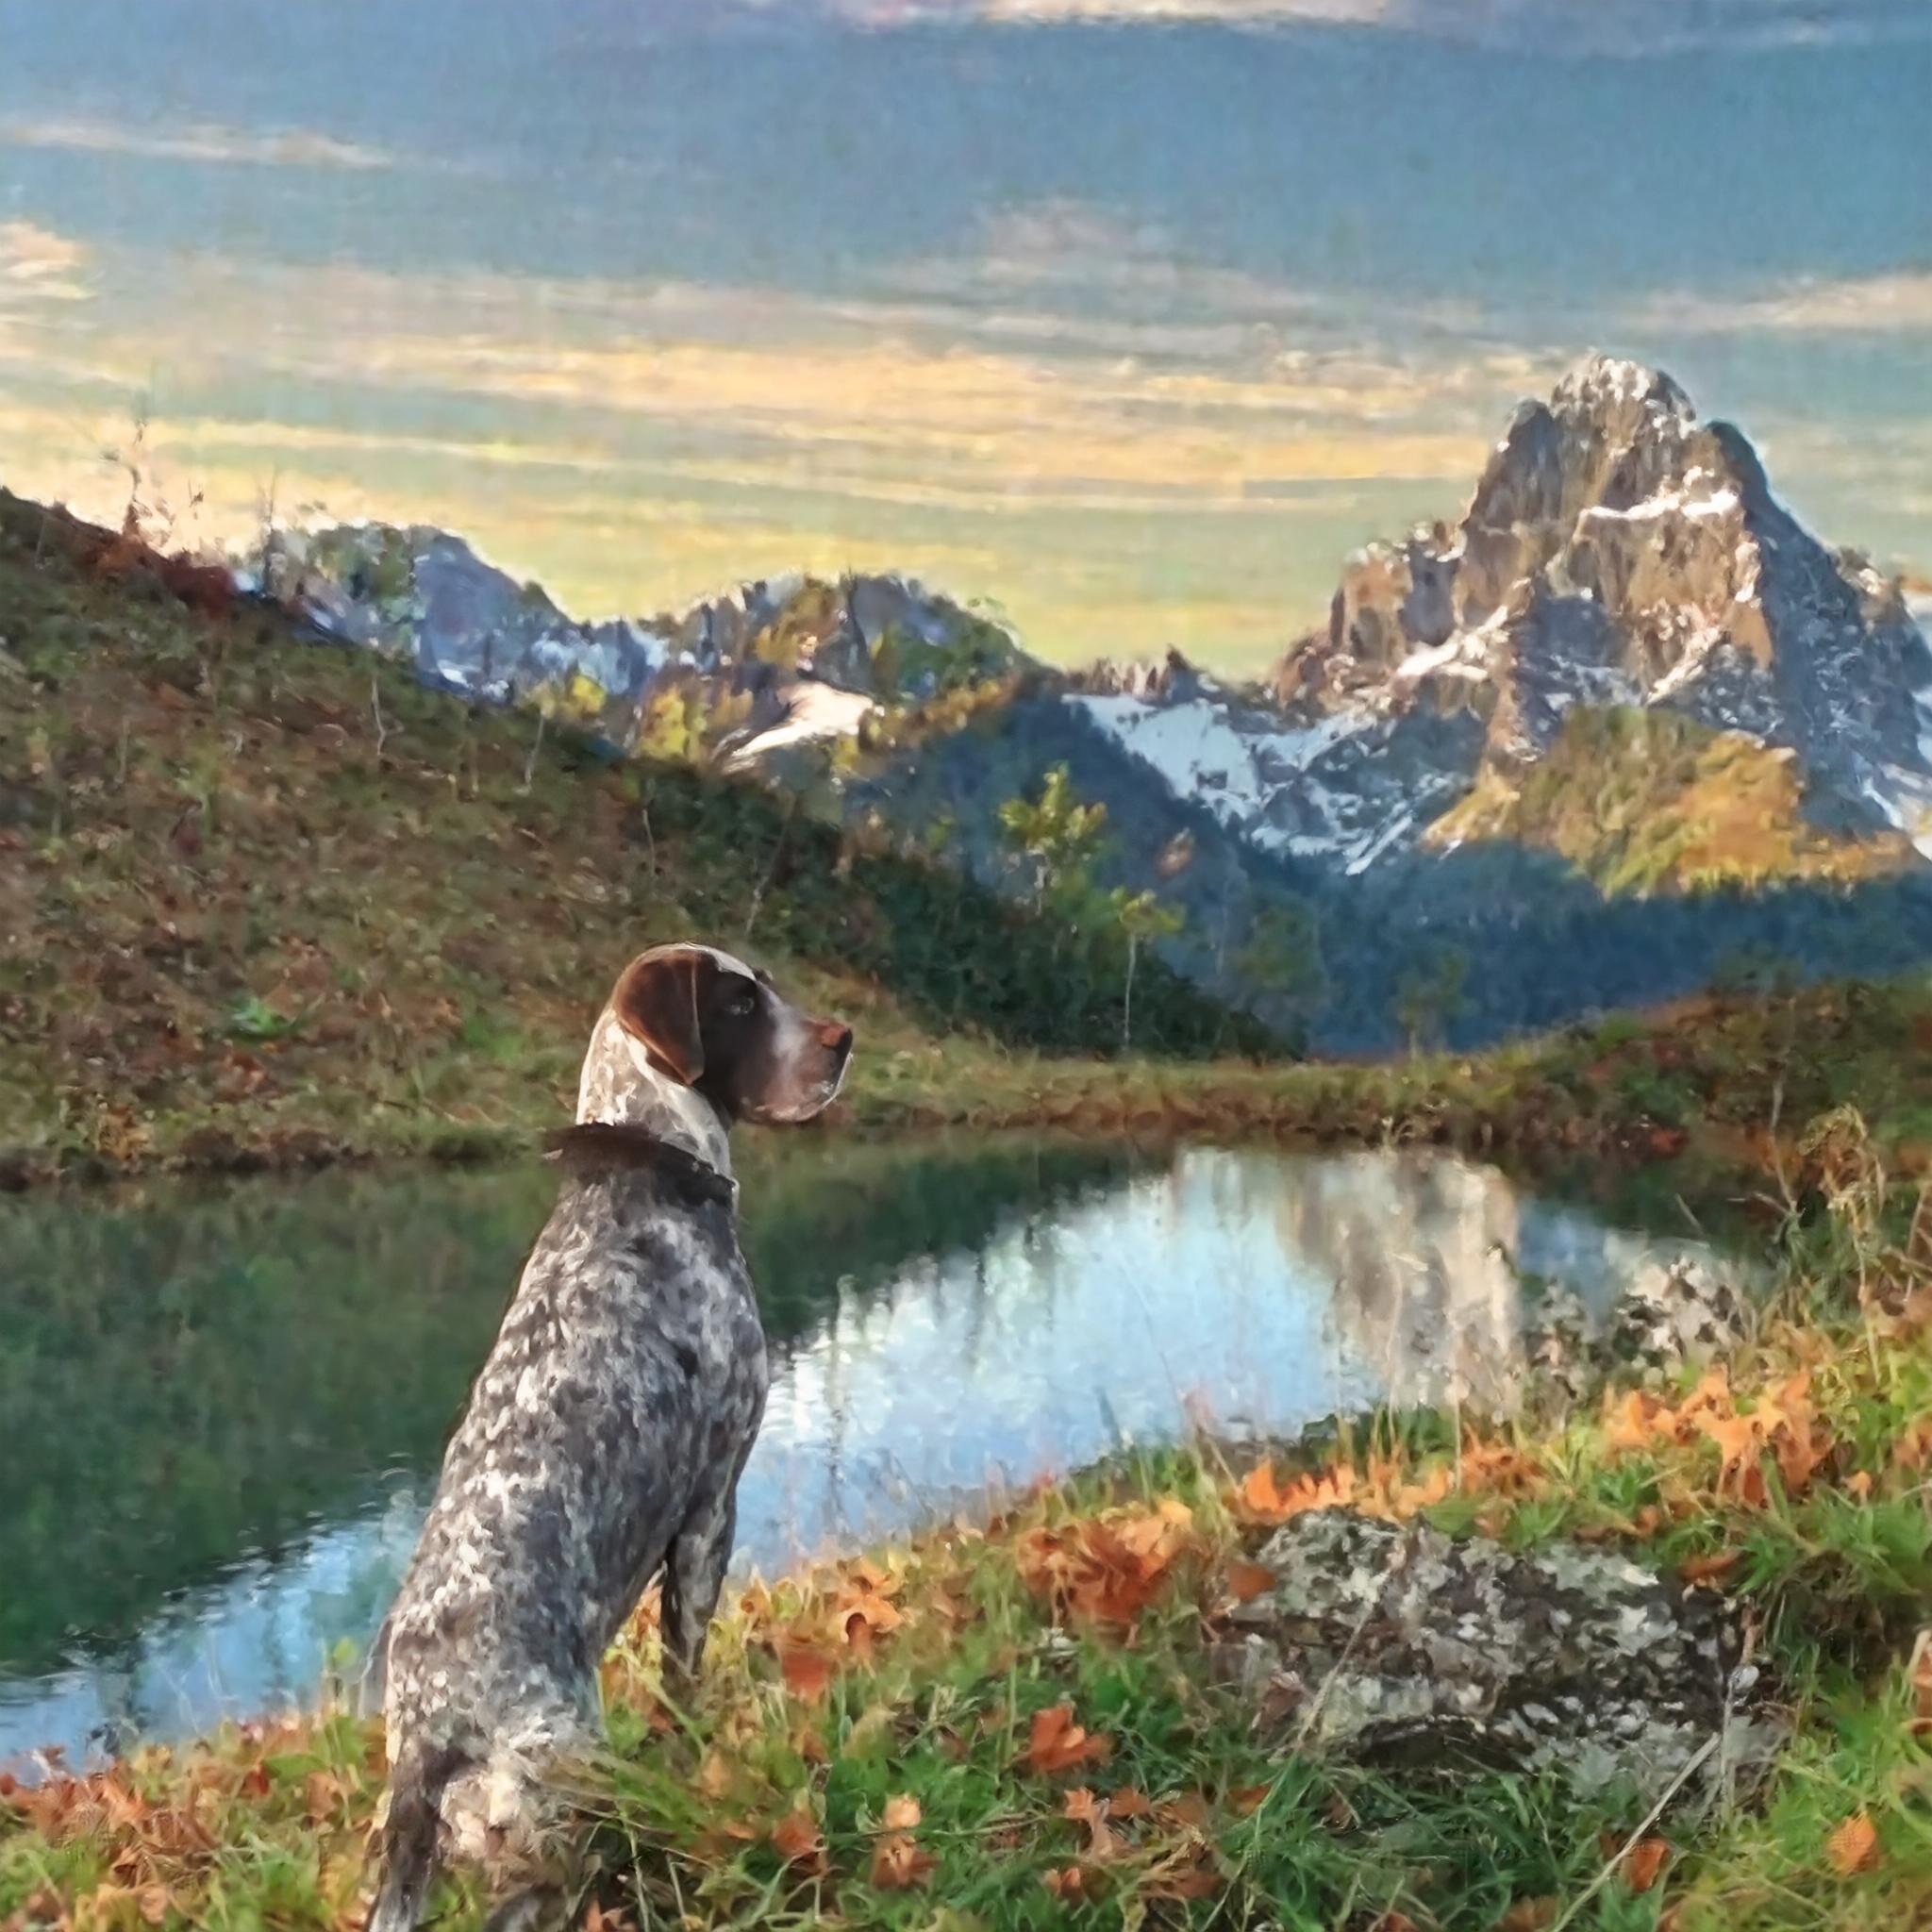 De Braque d'Auvergne is een middelgrote, zachte, zeer aanhankelijke, intelligente en gehoorzame hond